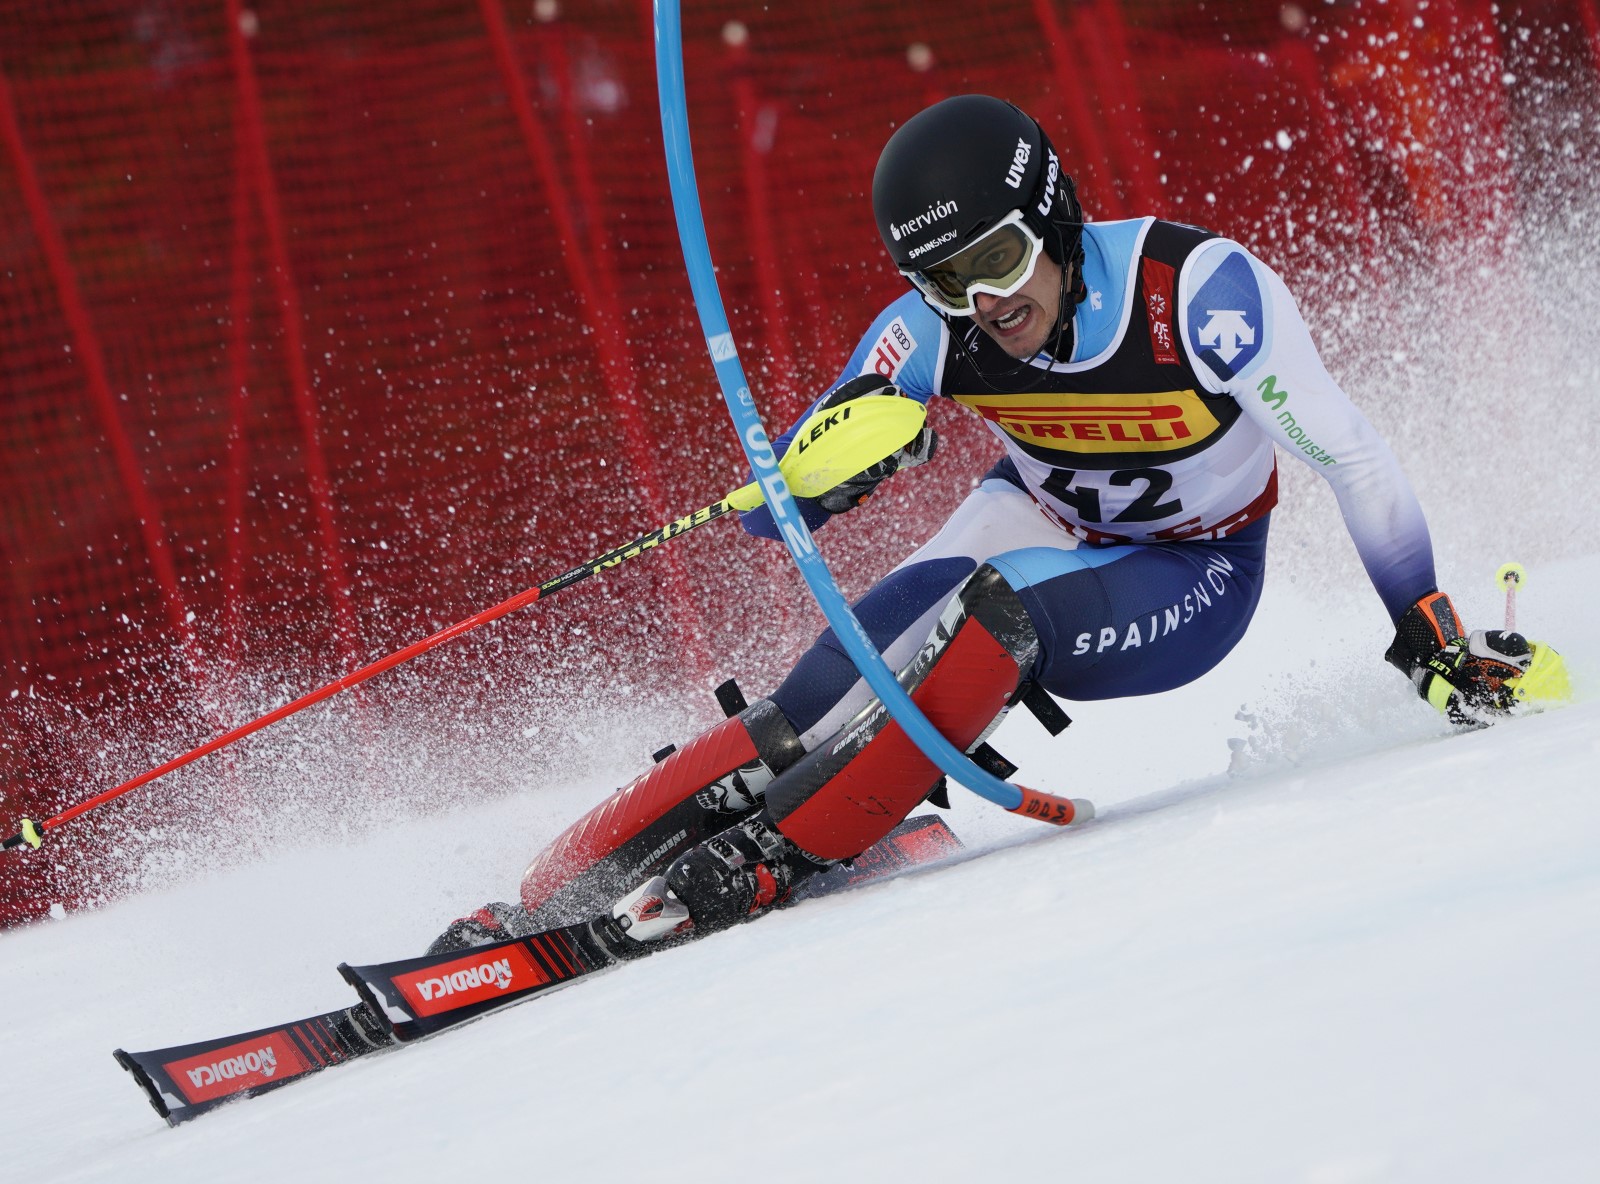 Juan del Campo, el 27 en el slalom de los Campeonatos del Mundo de esquí alpino de Äre